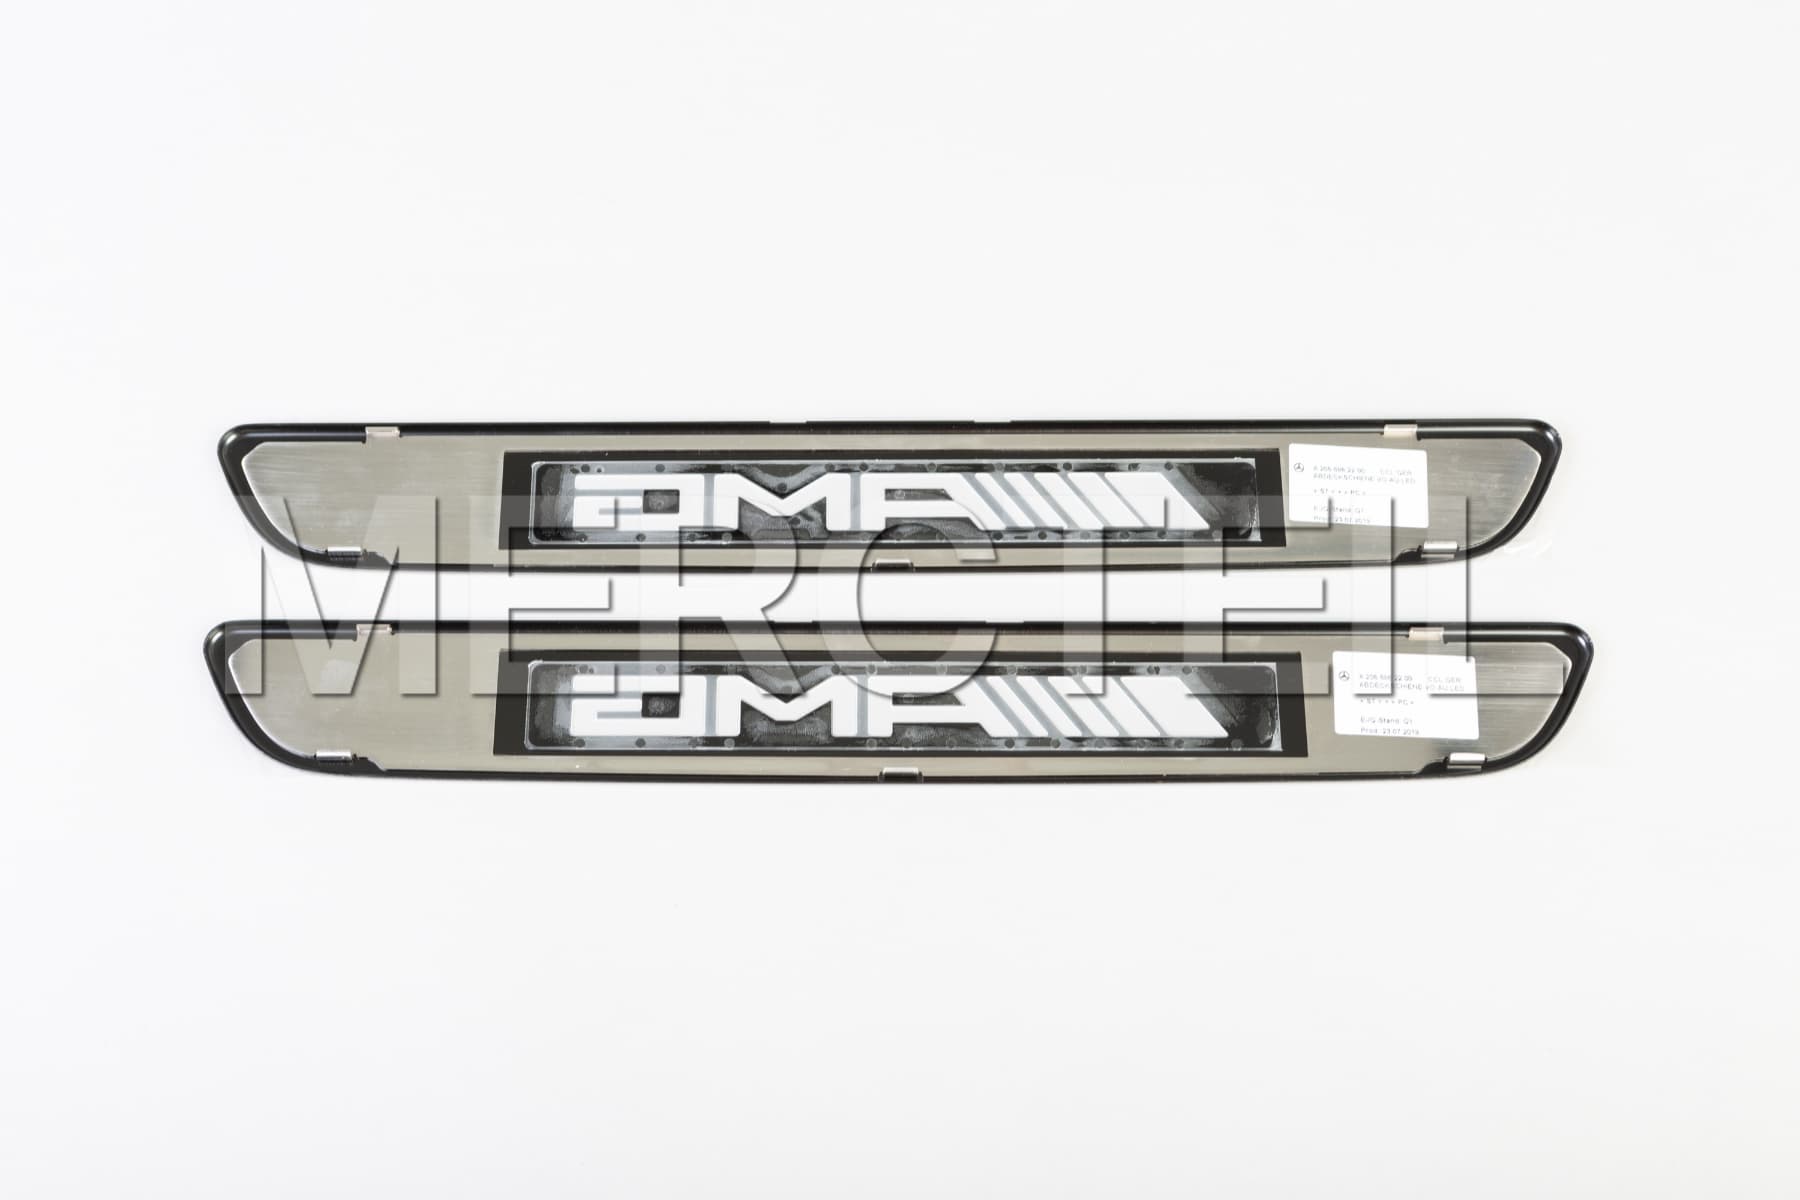 GLC Klasse AMG Austauschbare Abdeckungen für Beleuchtete Einstiegsleisten Original Mercedes AMG (Teilenummer: A2056862200)